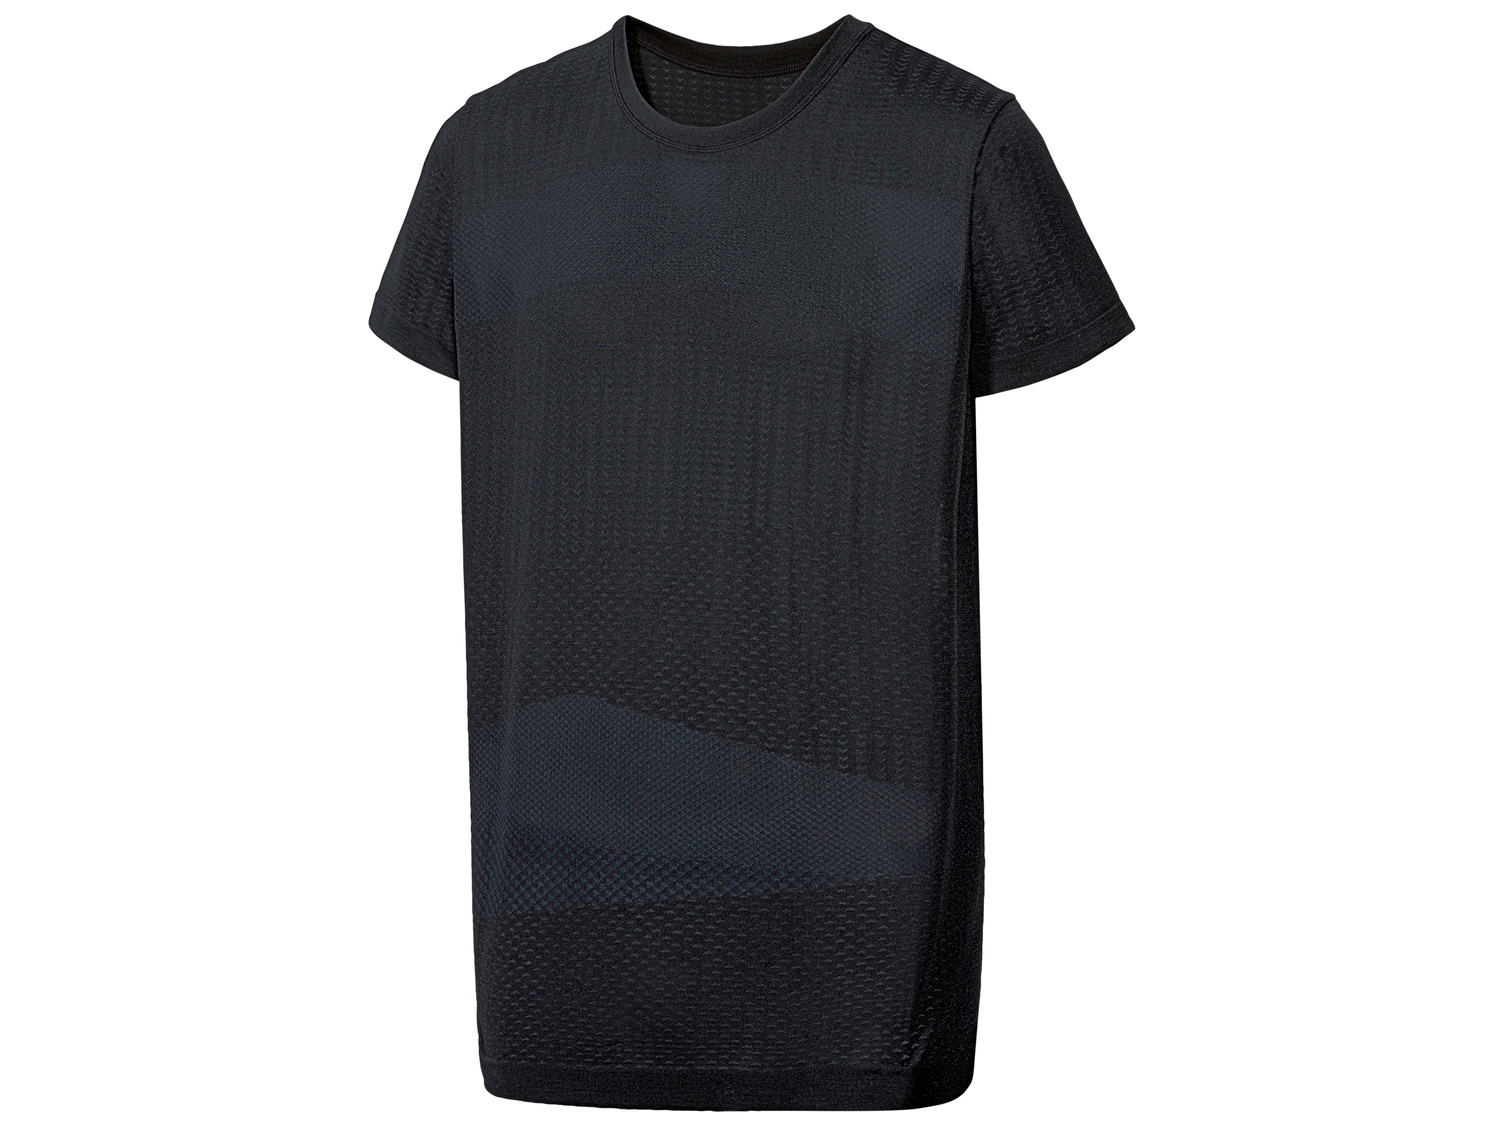 T-shirt sportiva da uomo Crivit, prezzo 4.99 &#8364; 
Misure: M-XL
Taglie disponibili

Caratteristiche
 ...